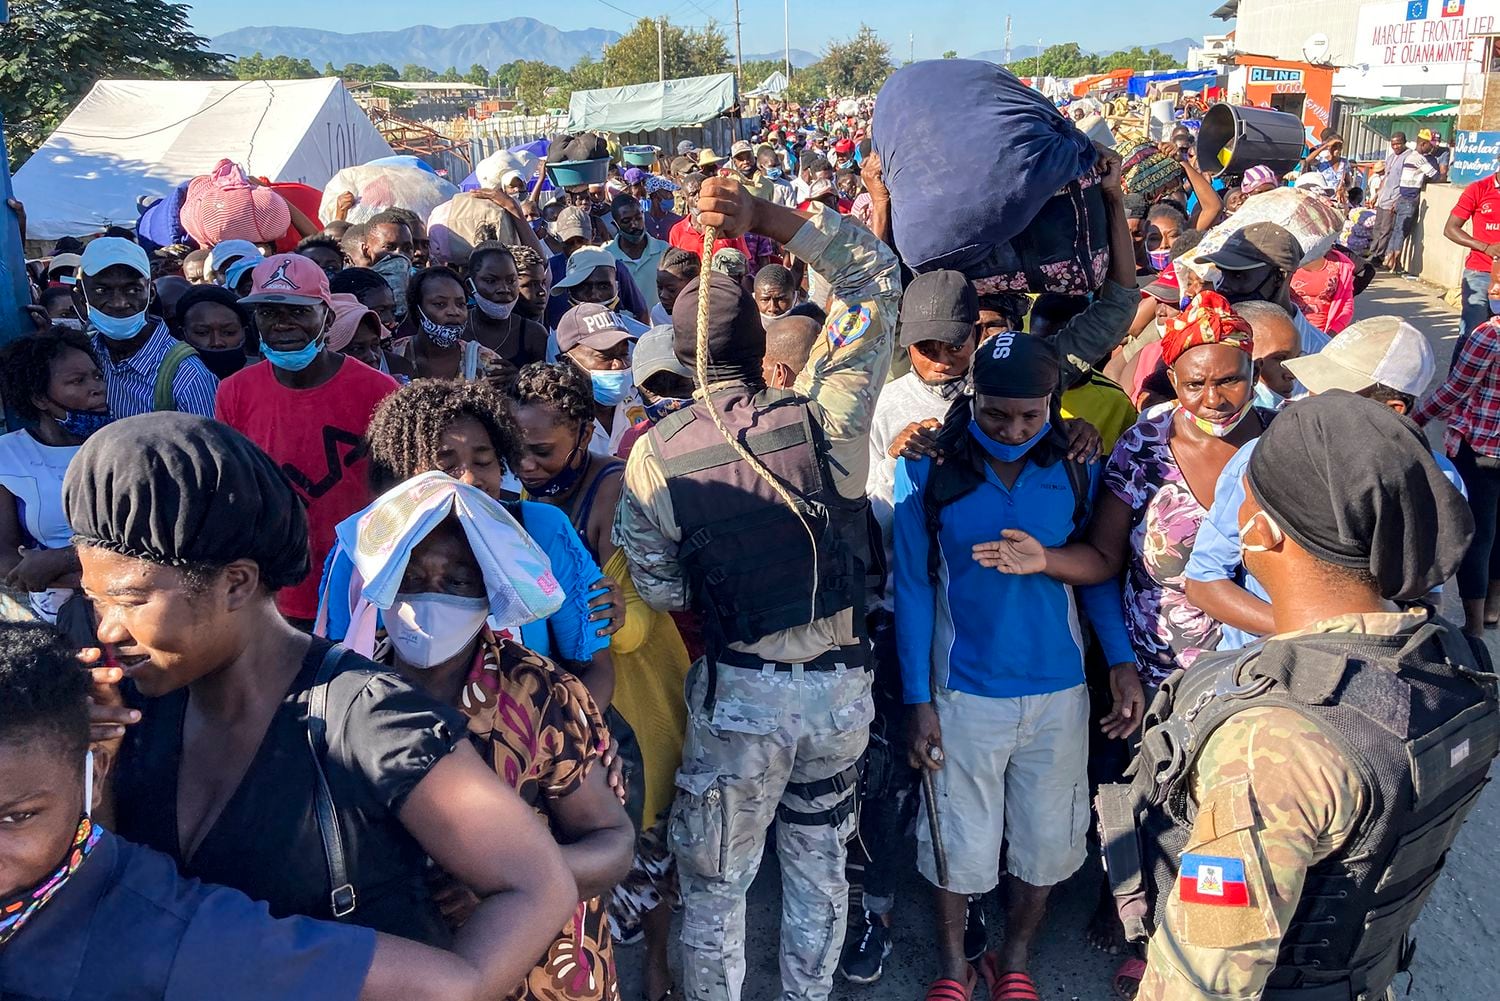 Varios agentes amenazan con sus látigos a la multitud agolpada en el puente del río Massacre, en la frontera norte de Ouanaminthe, a la espera de cruzar al mercado binacional del lado dominicano. Pincha en la imagen para ver la fotogalería.